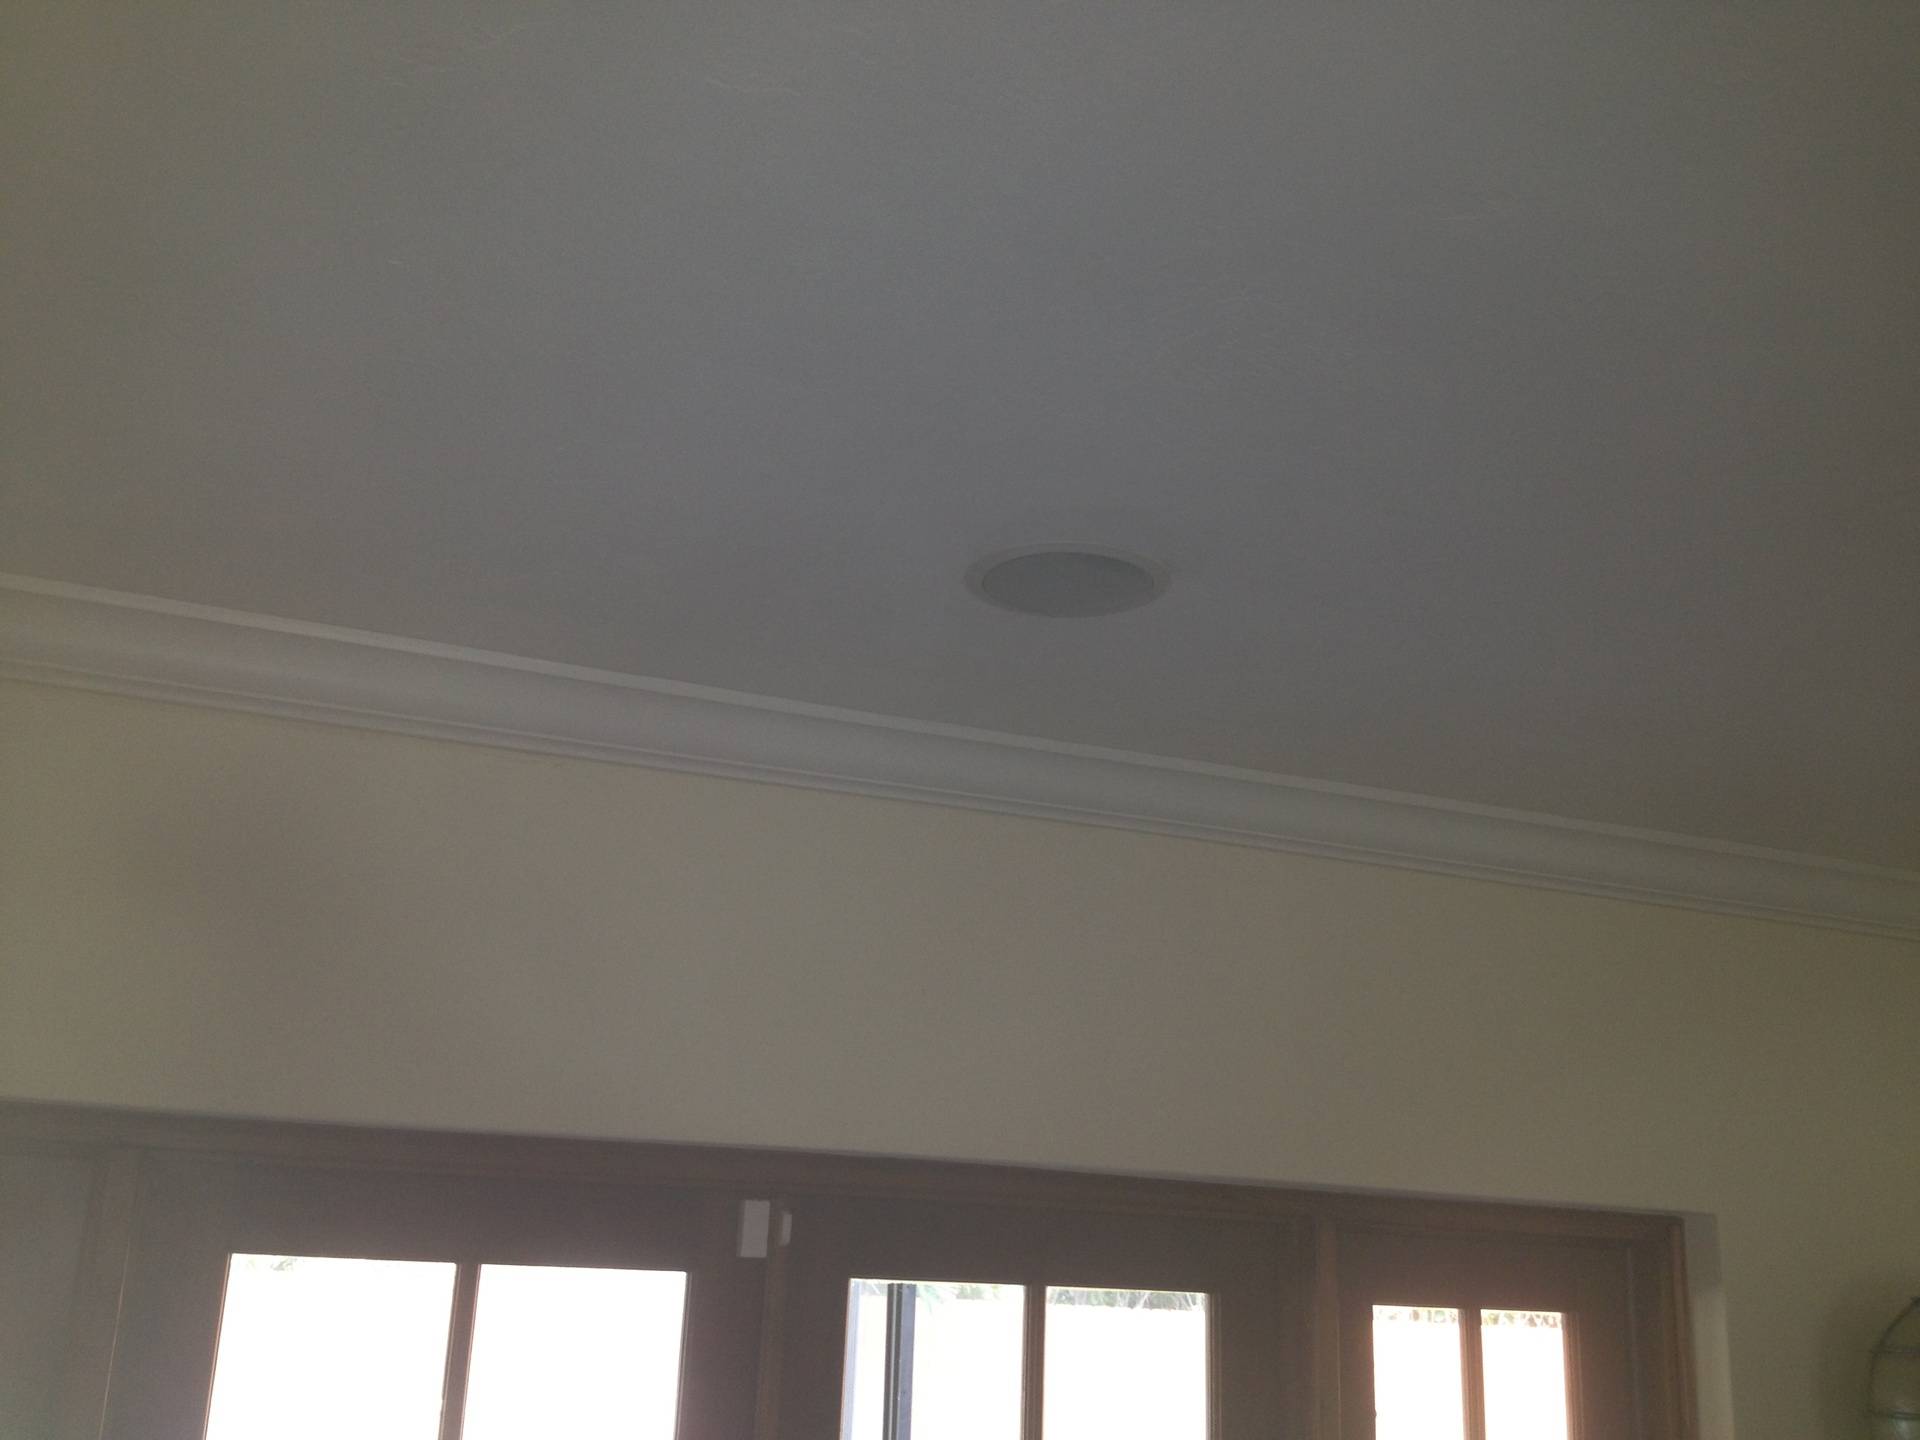 In ceiling speakers